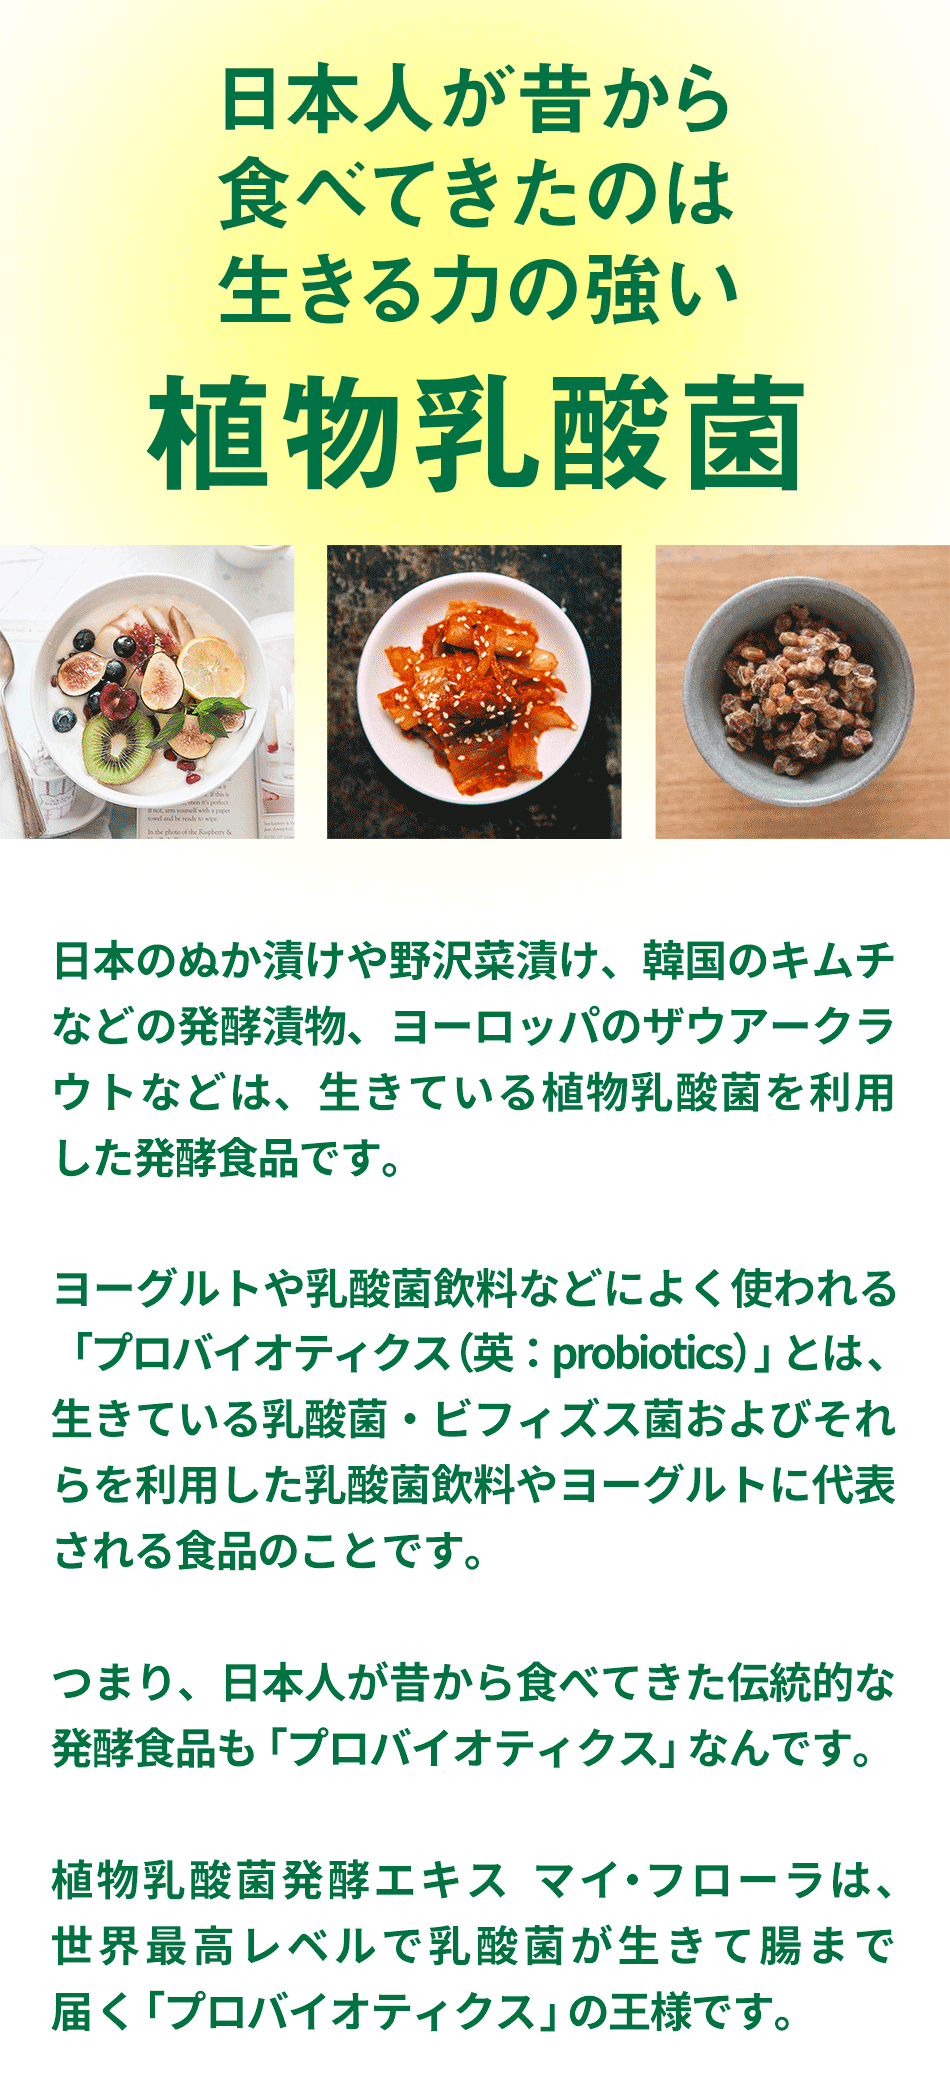 日本人が昔から食べてきたのは生きる力の強い植物乳酸